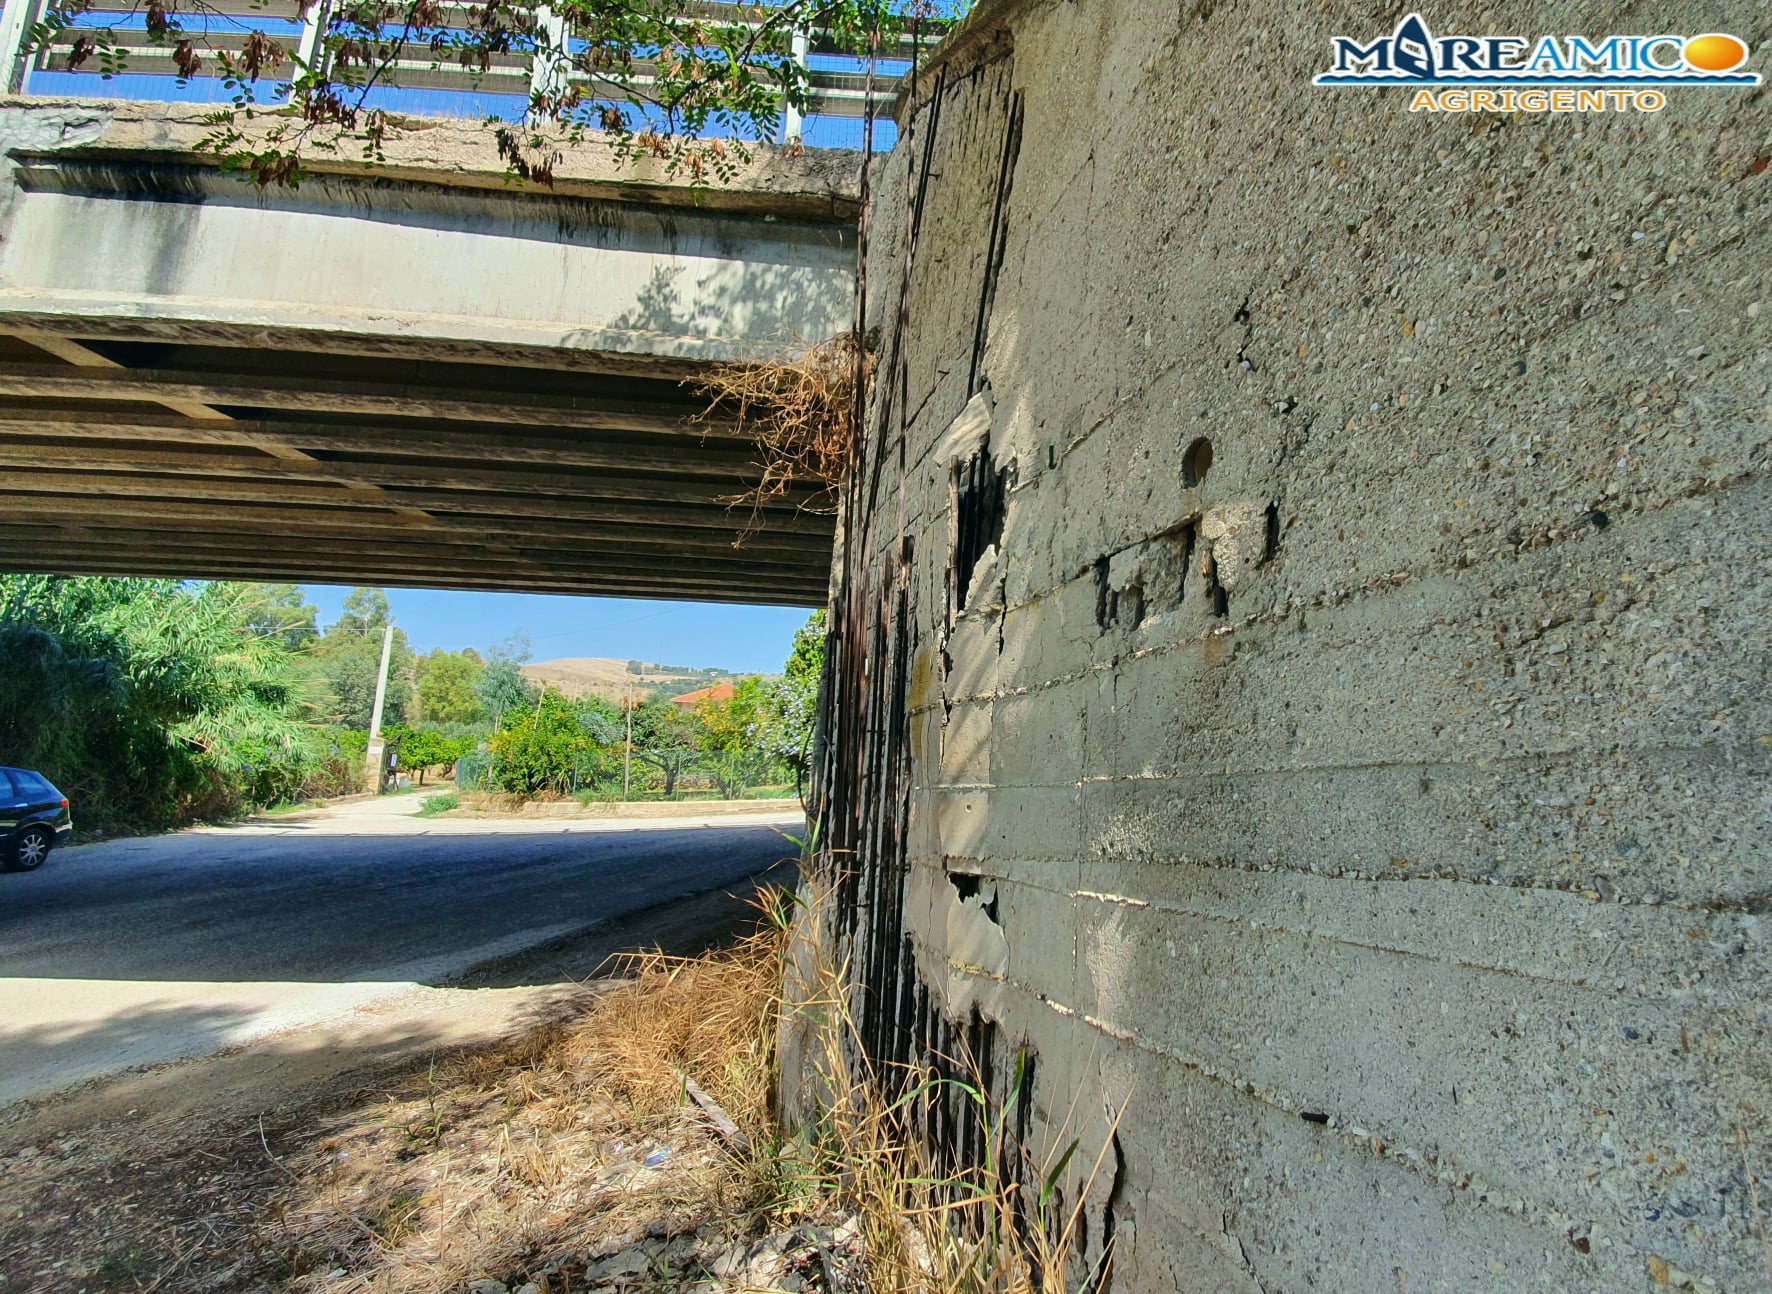 Infrastrutture in Sicilia: scoperto nuovo “ponte malato”, la denuncia di Mareamico – FOTO